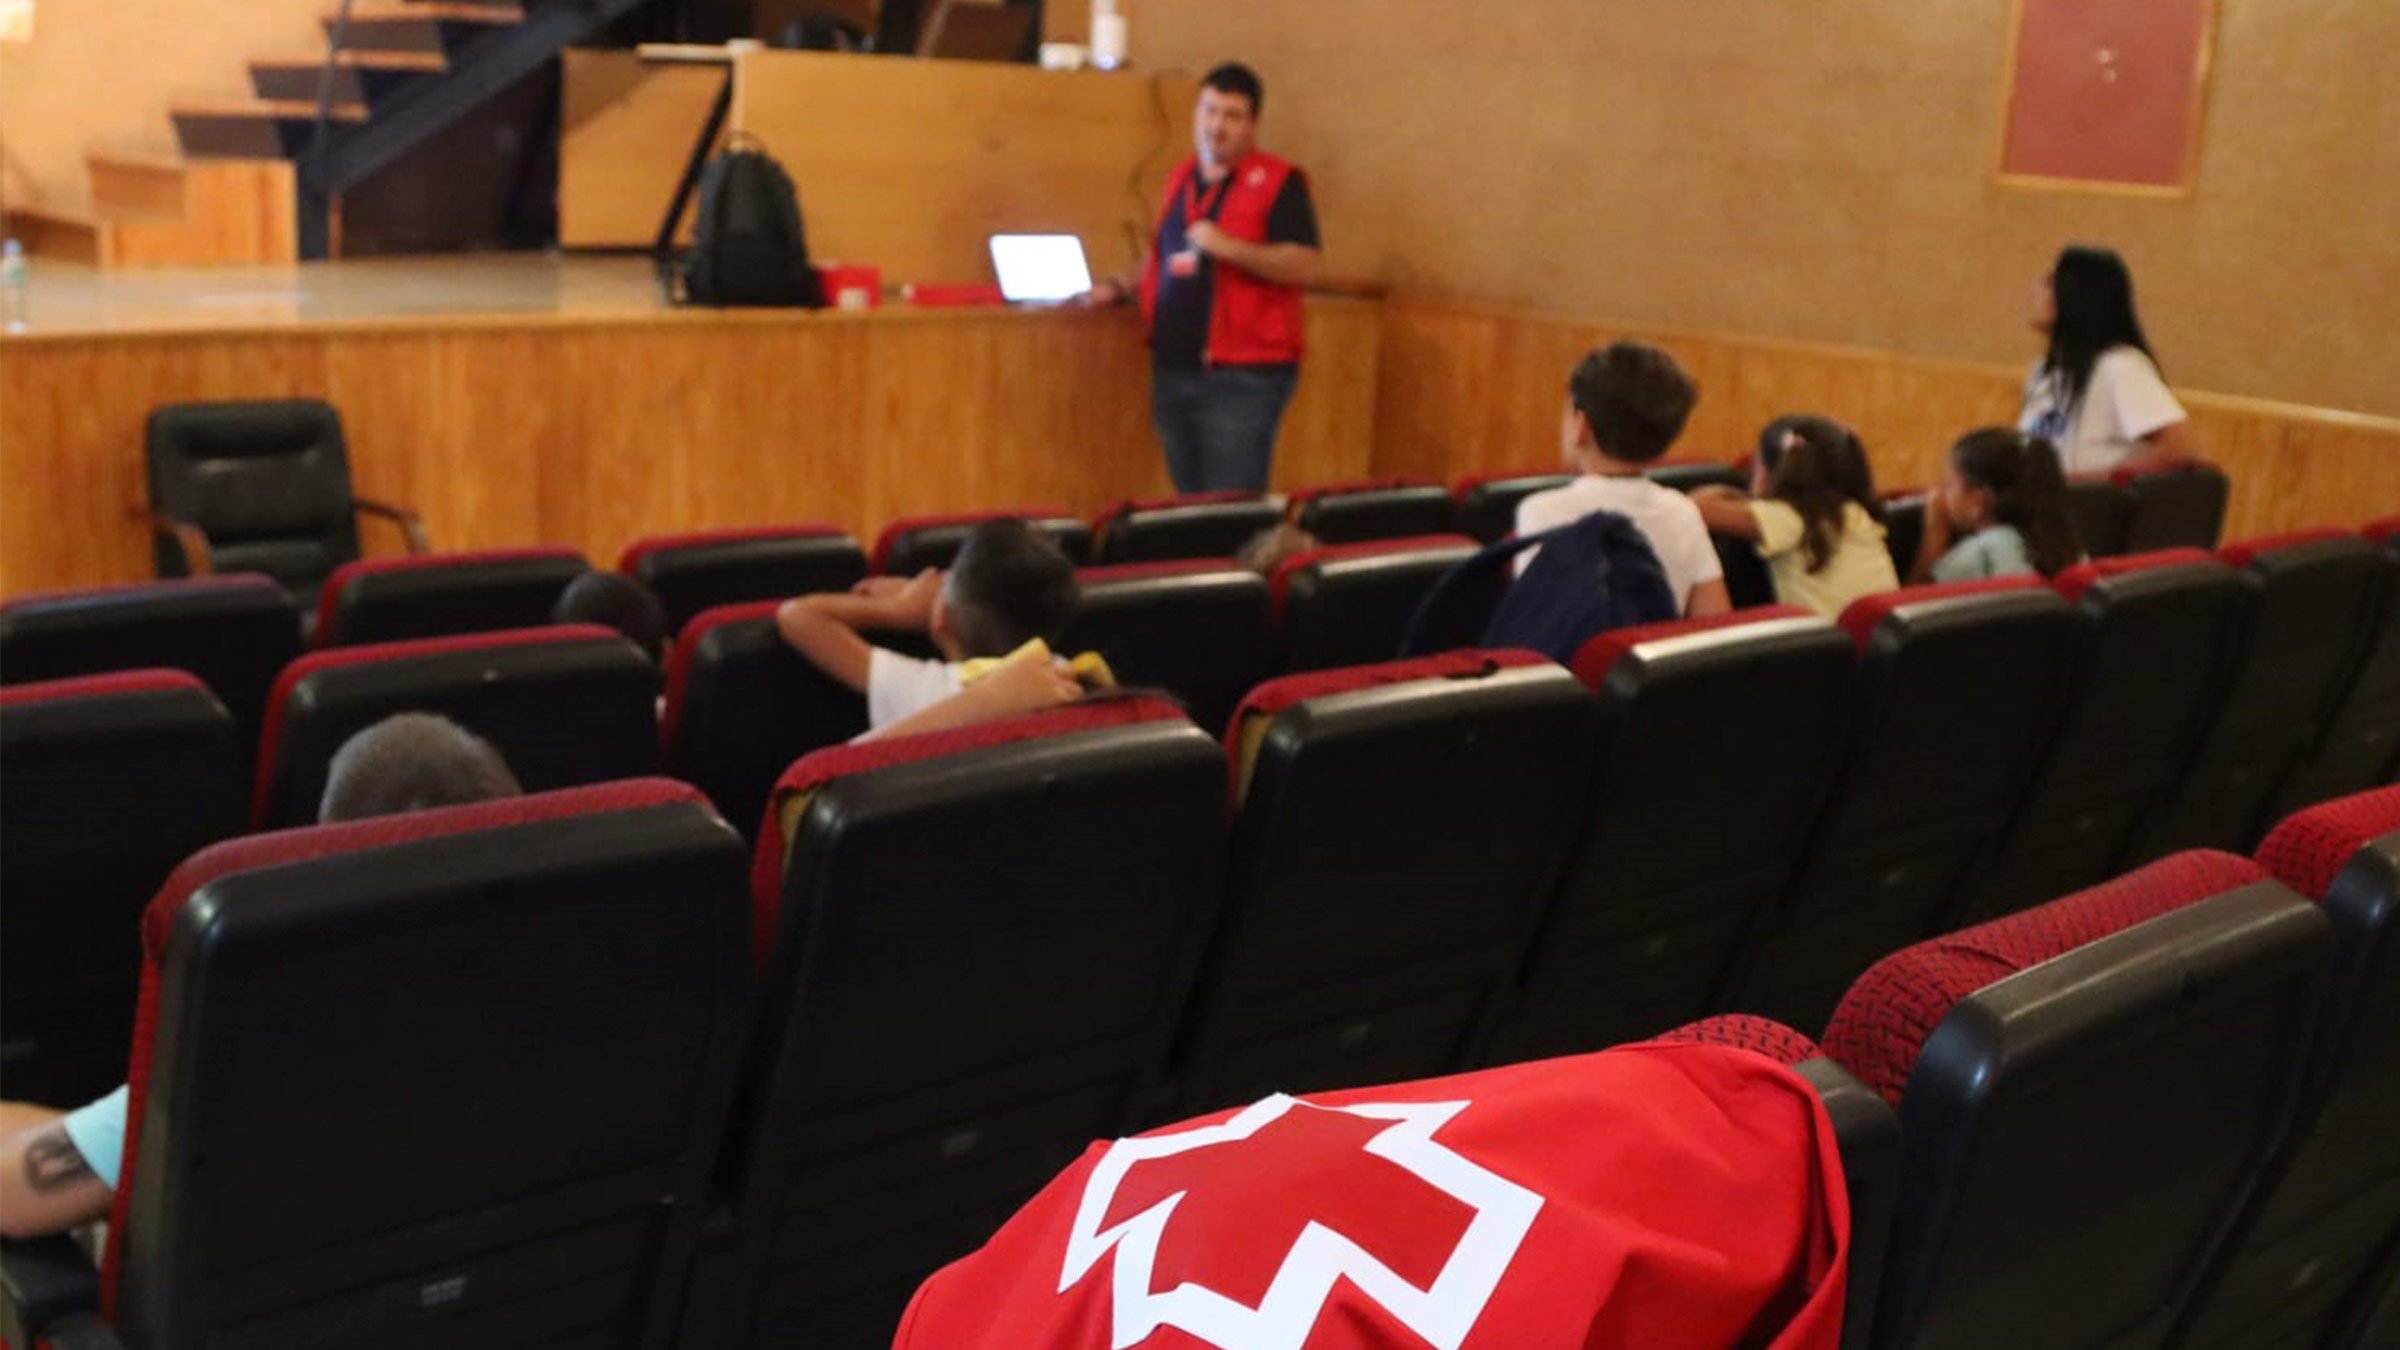 Charla de ciberseguridad para niños en Alcalá impartida por Cruz Roja